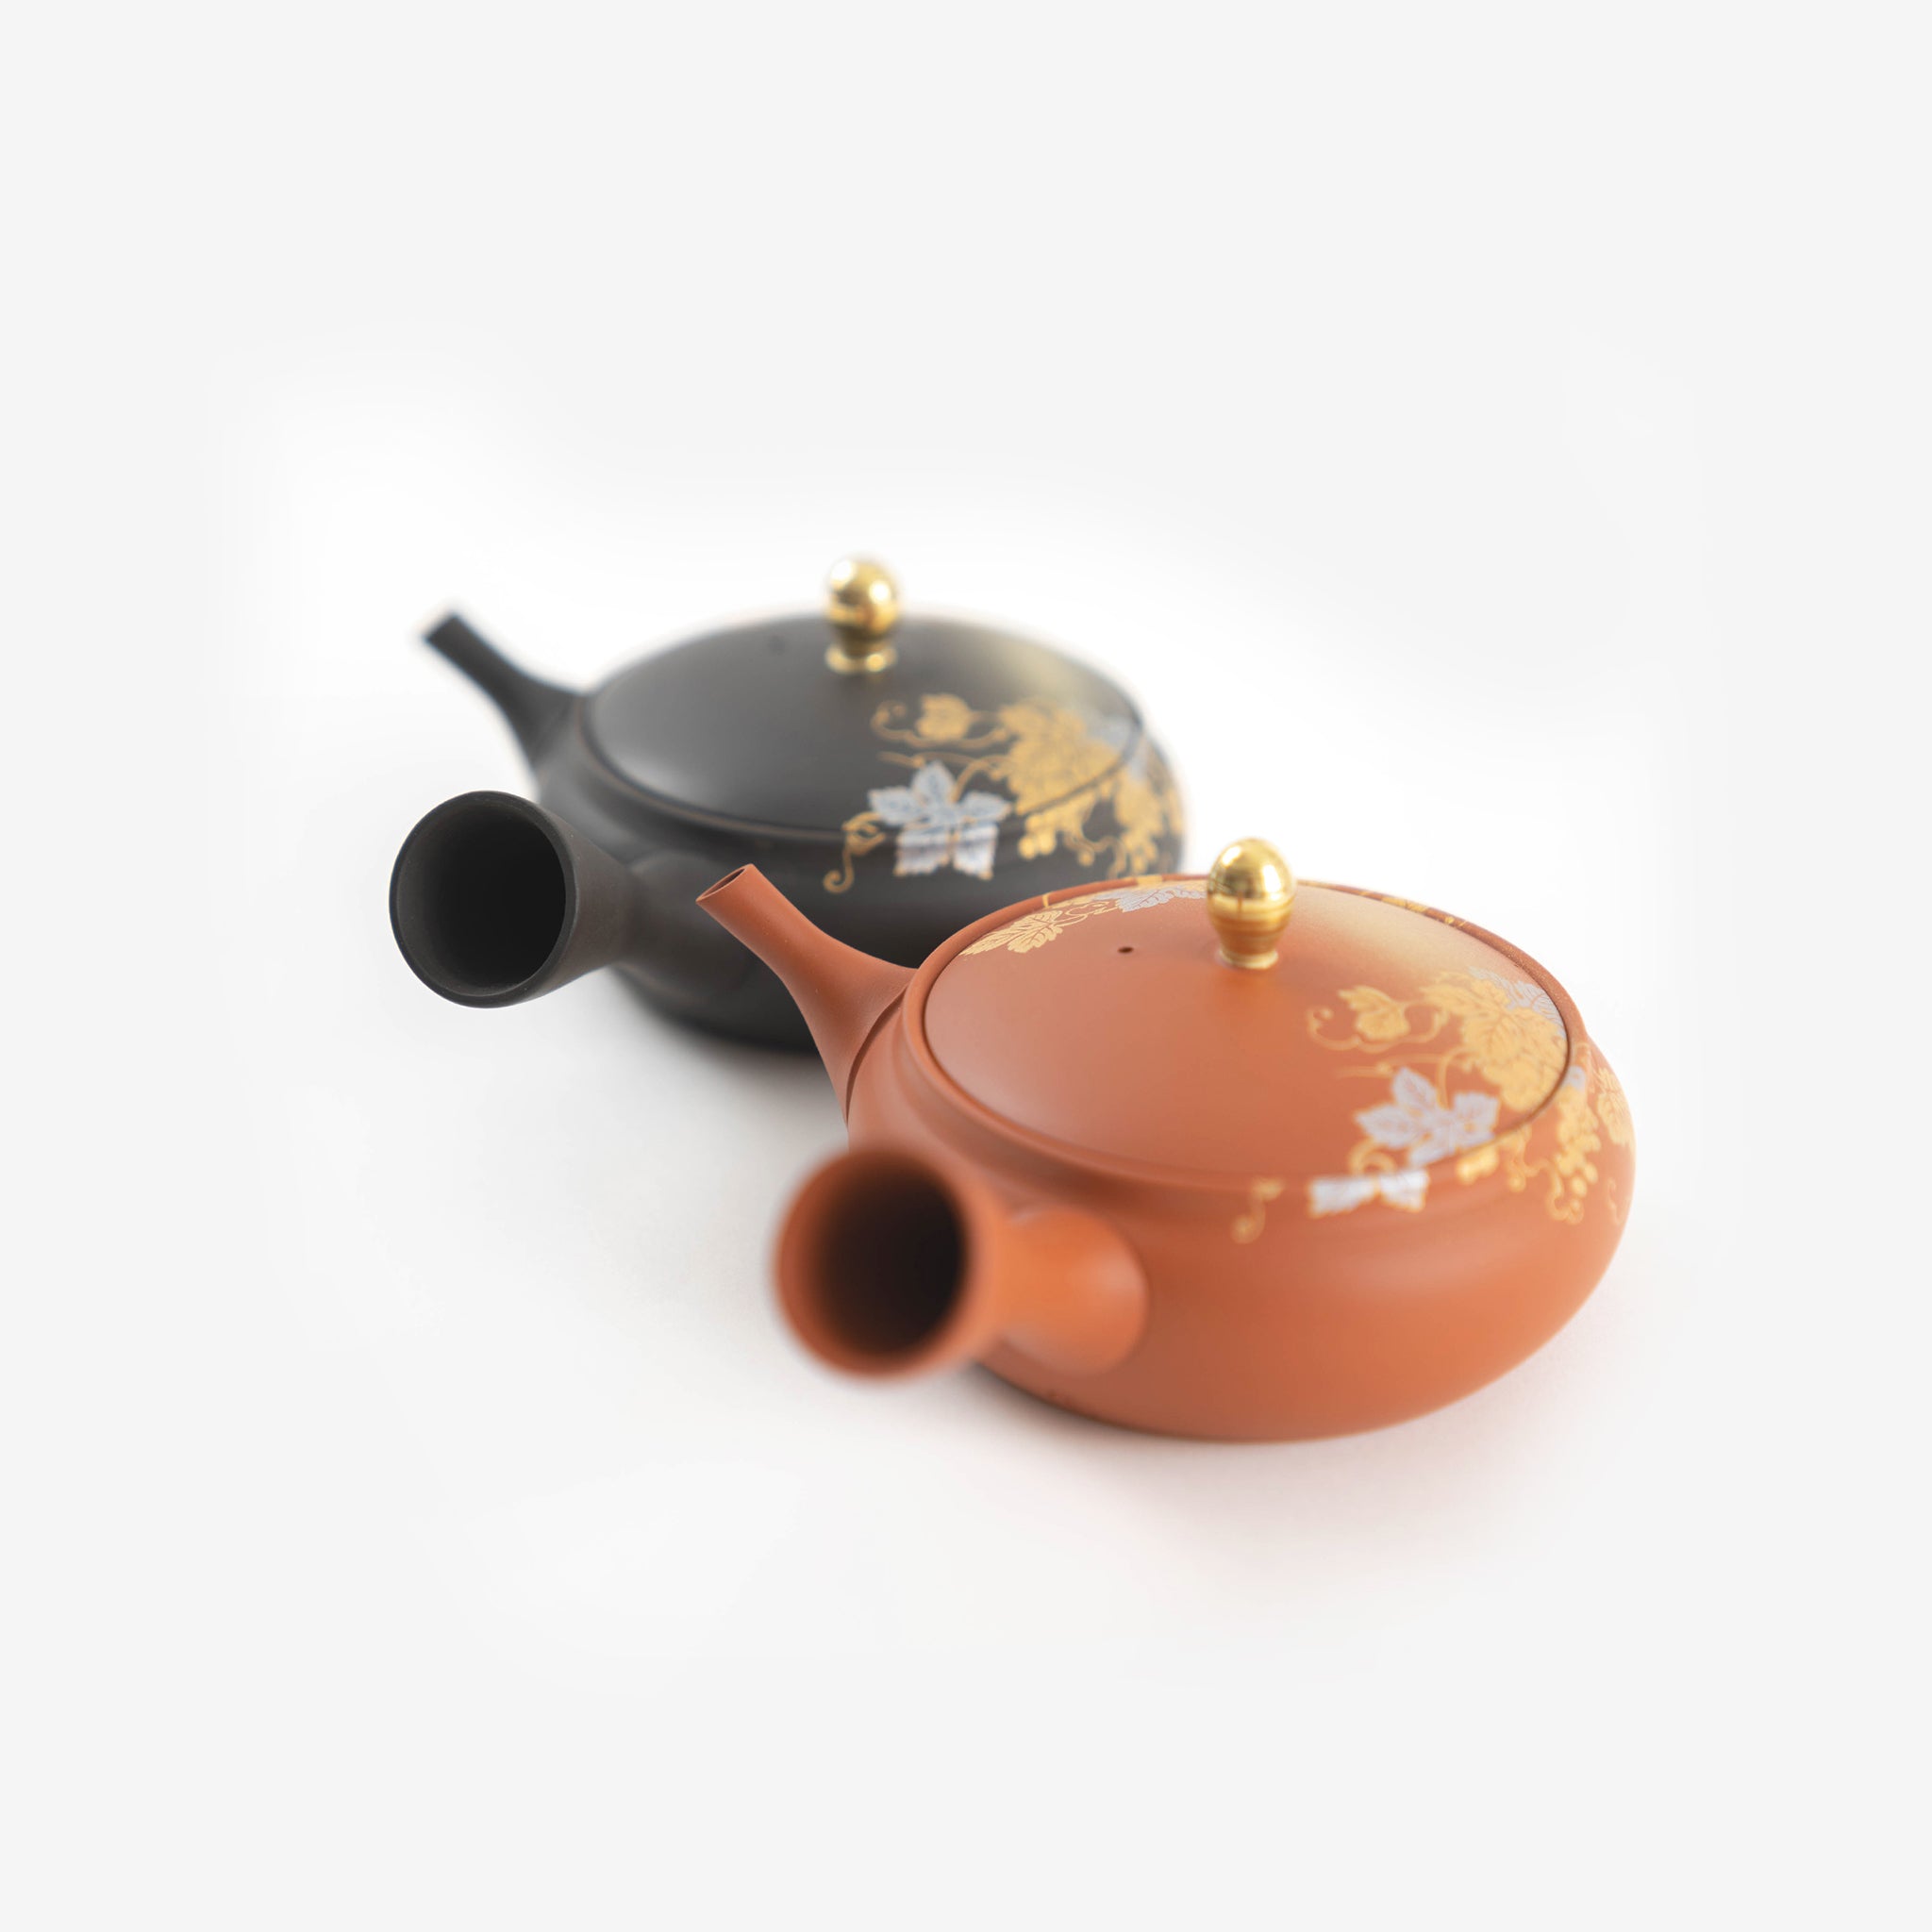 Tea pots and Tea Sets